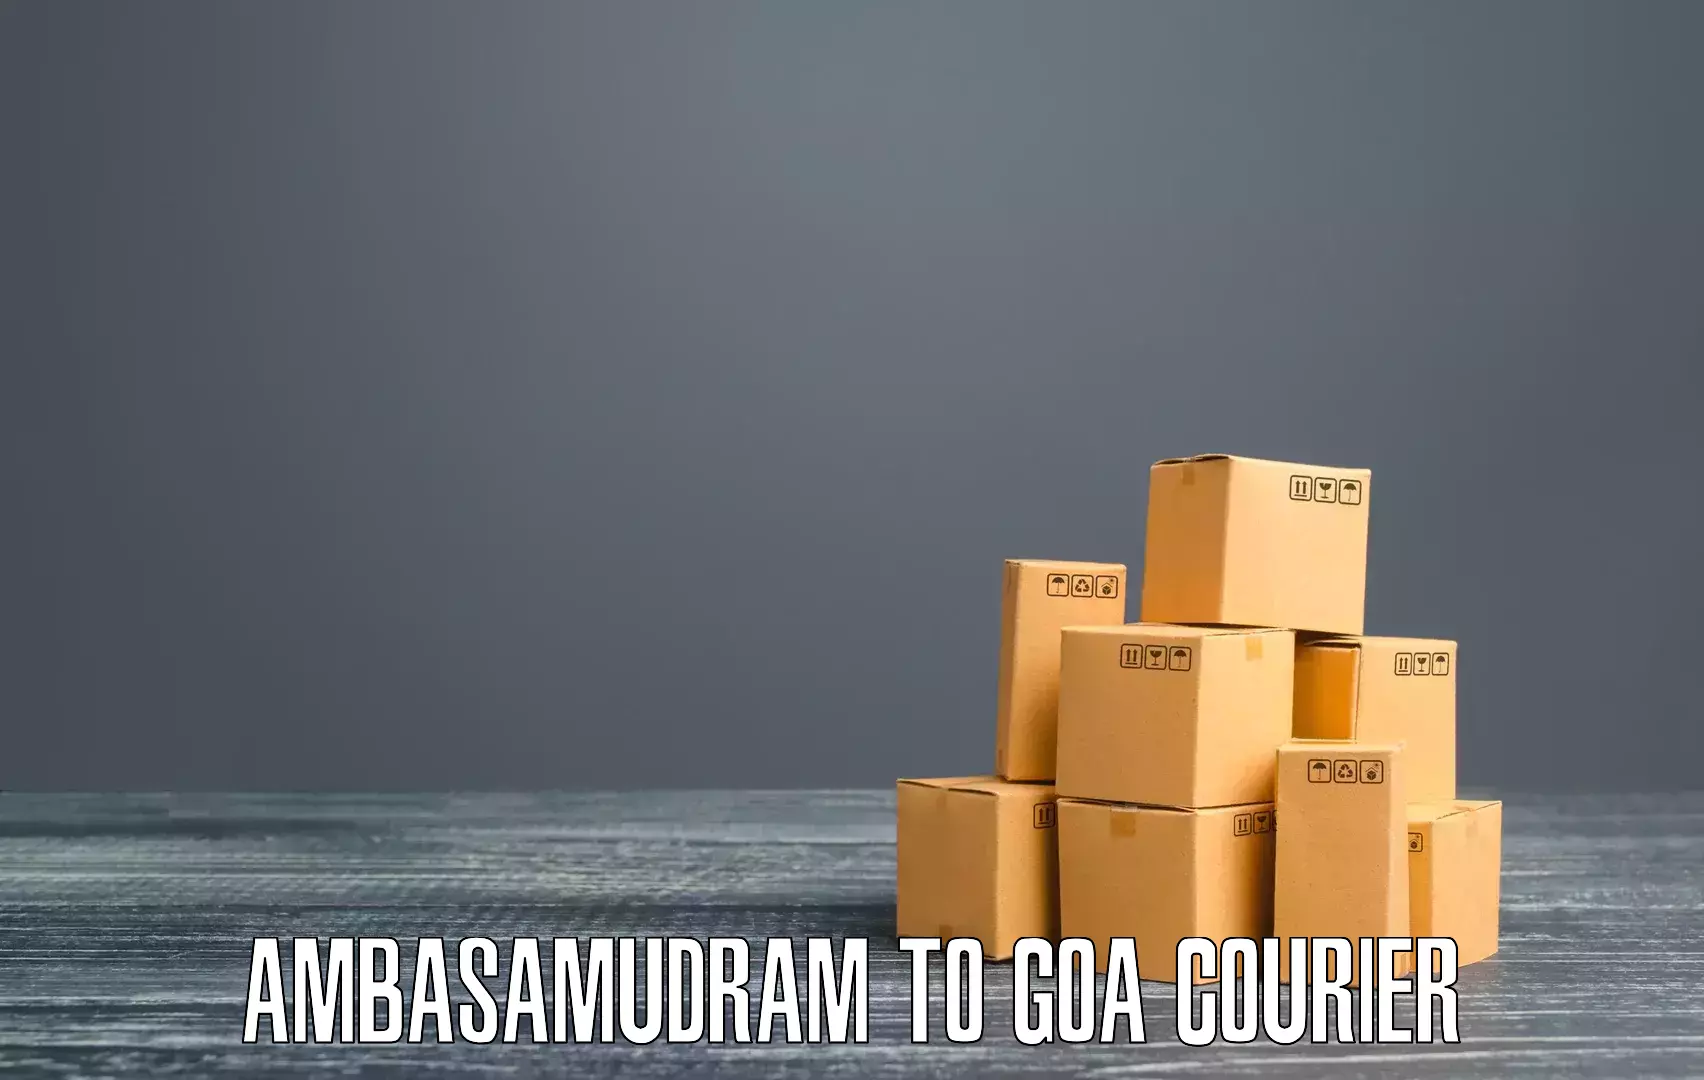 Courier service partnerships Ambasamudram to Canacona